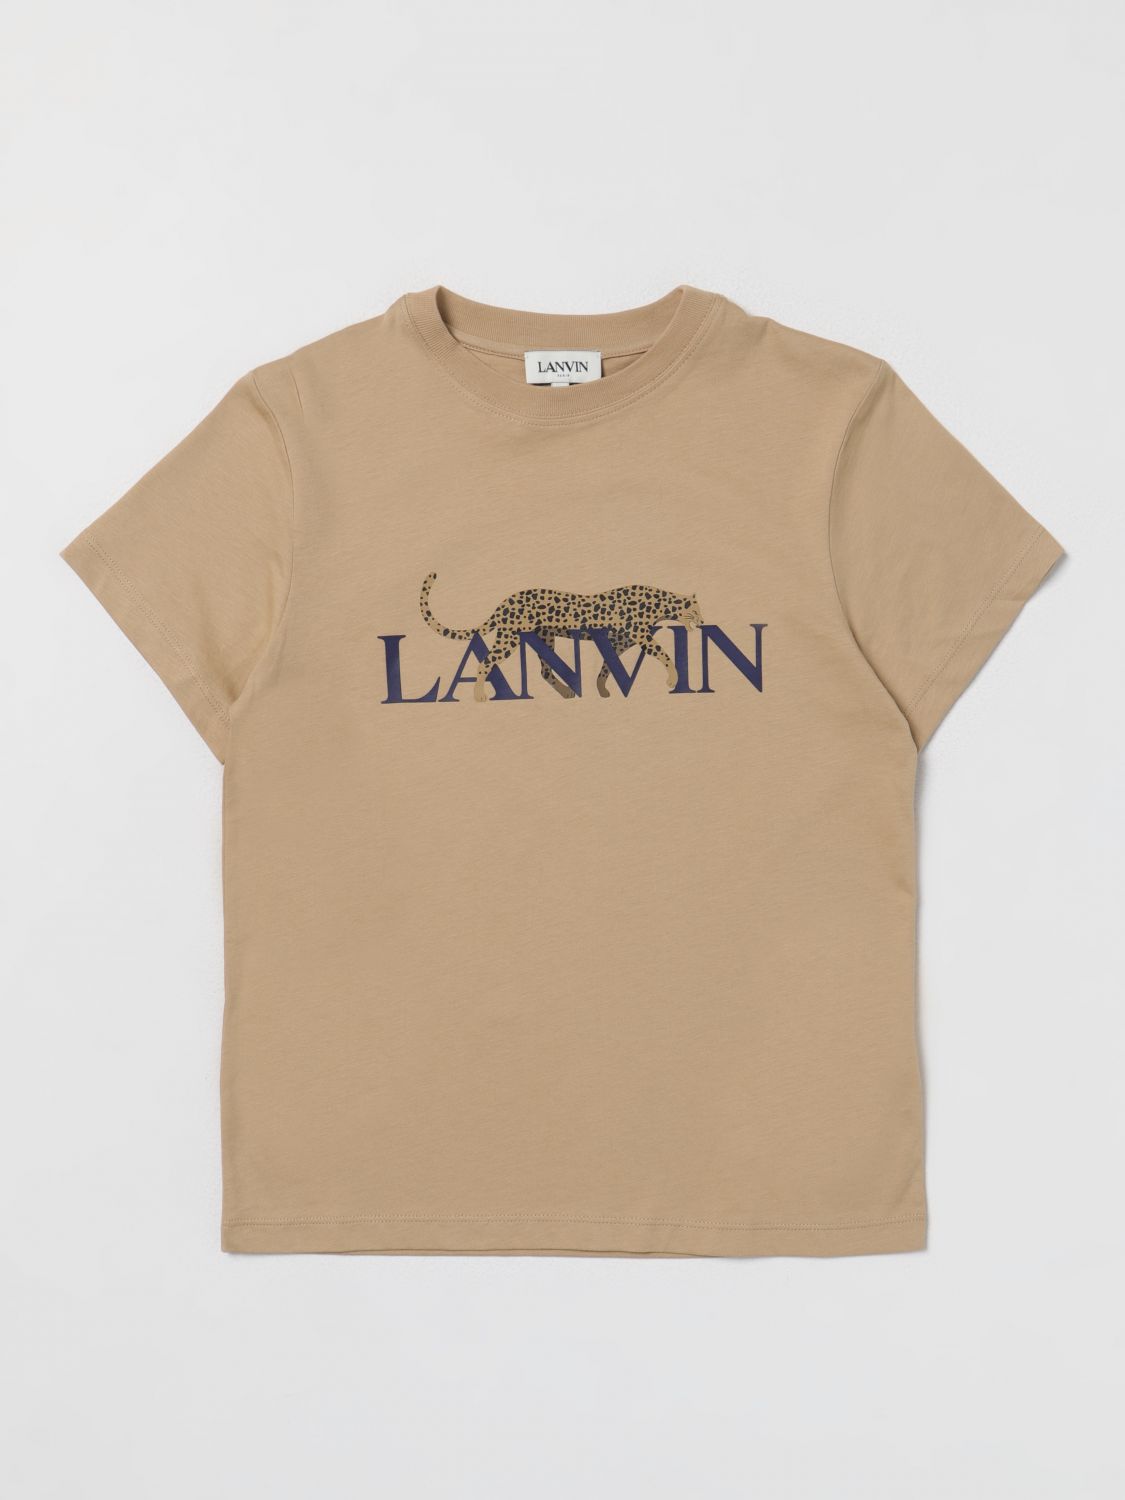 Lanvin T-shirt  Kids Color Beige